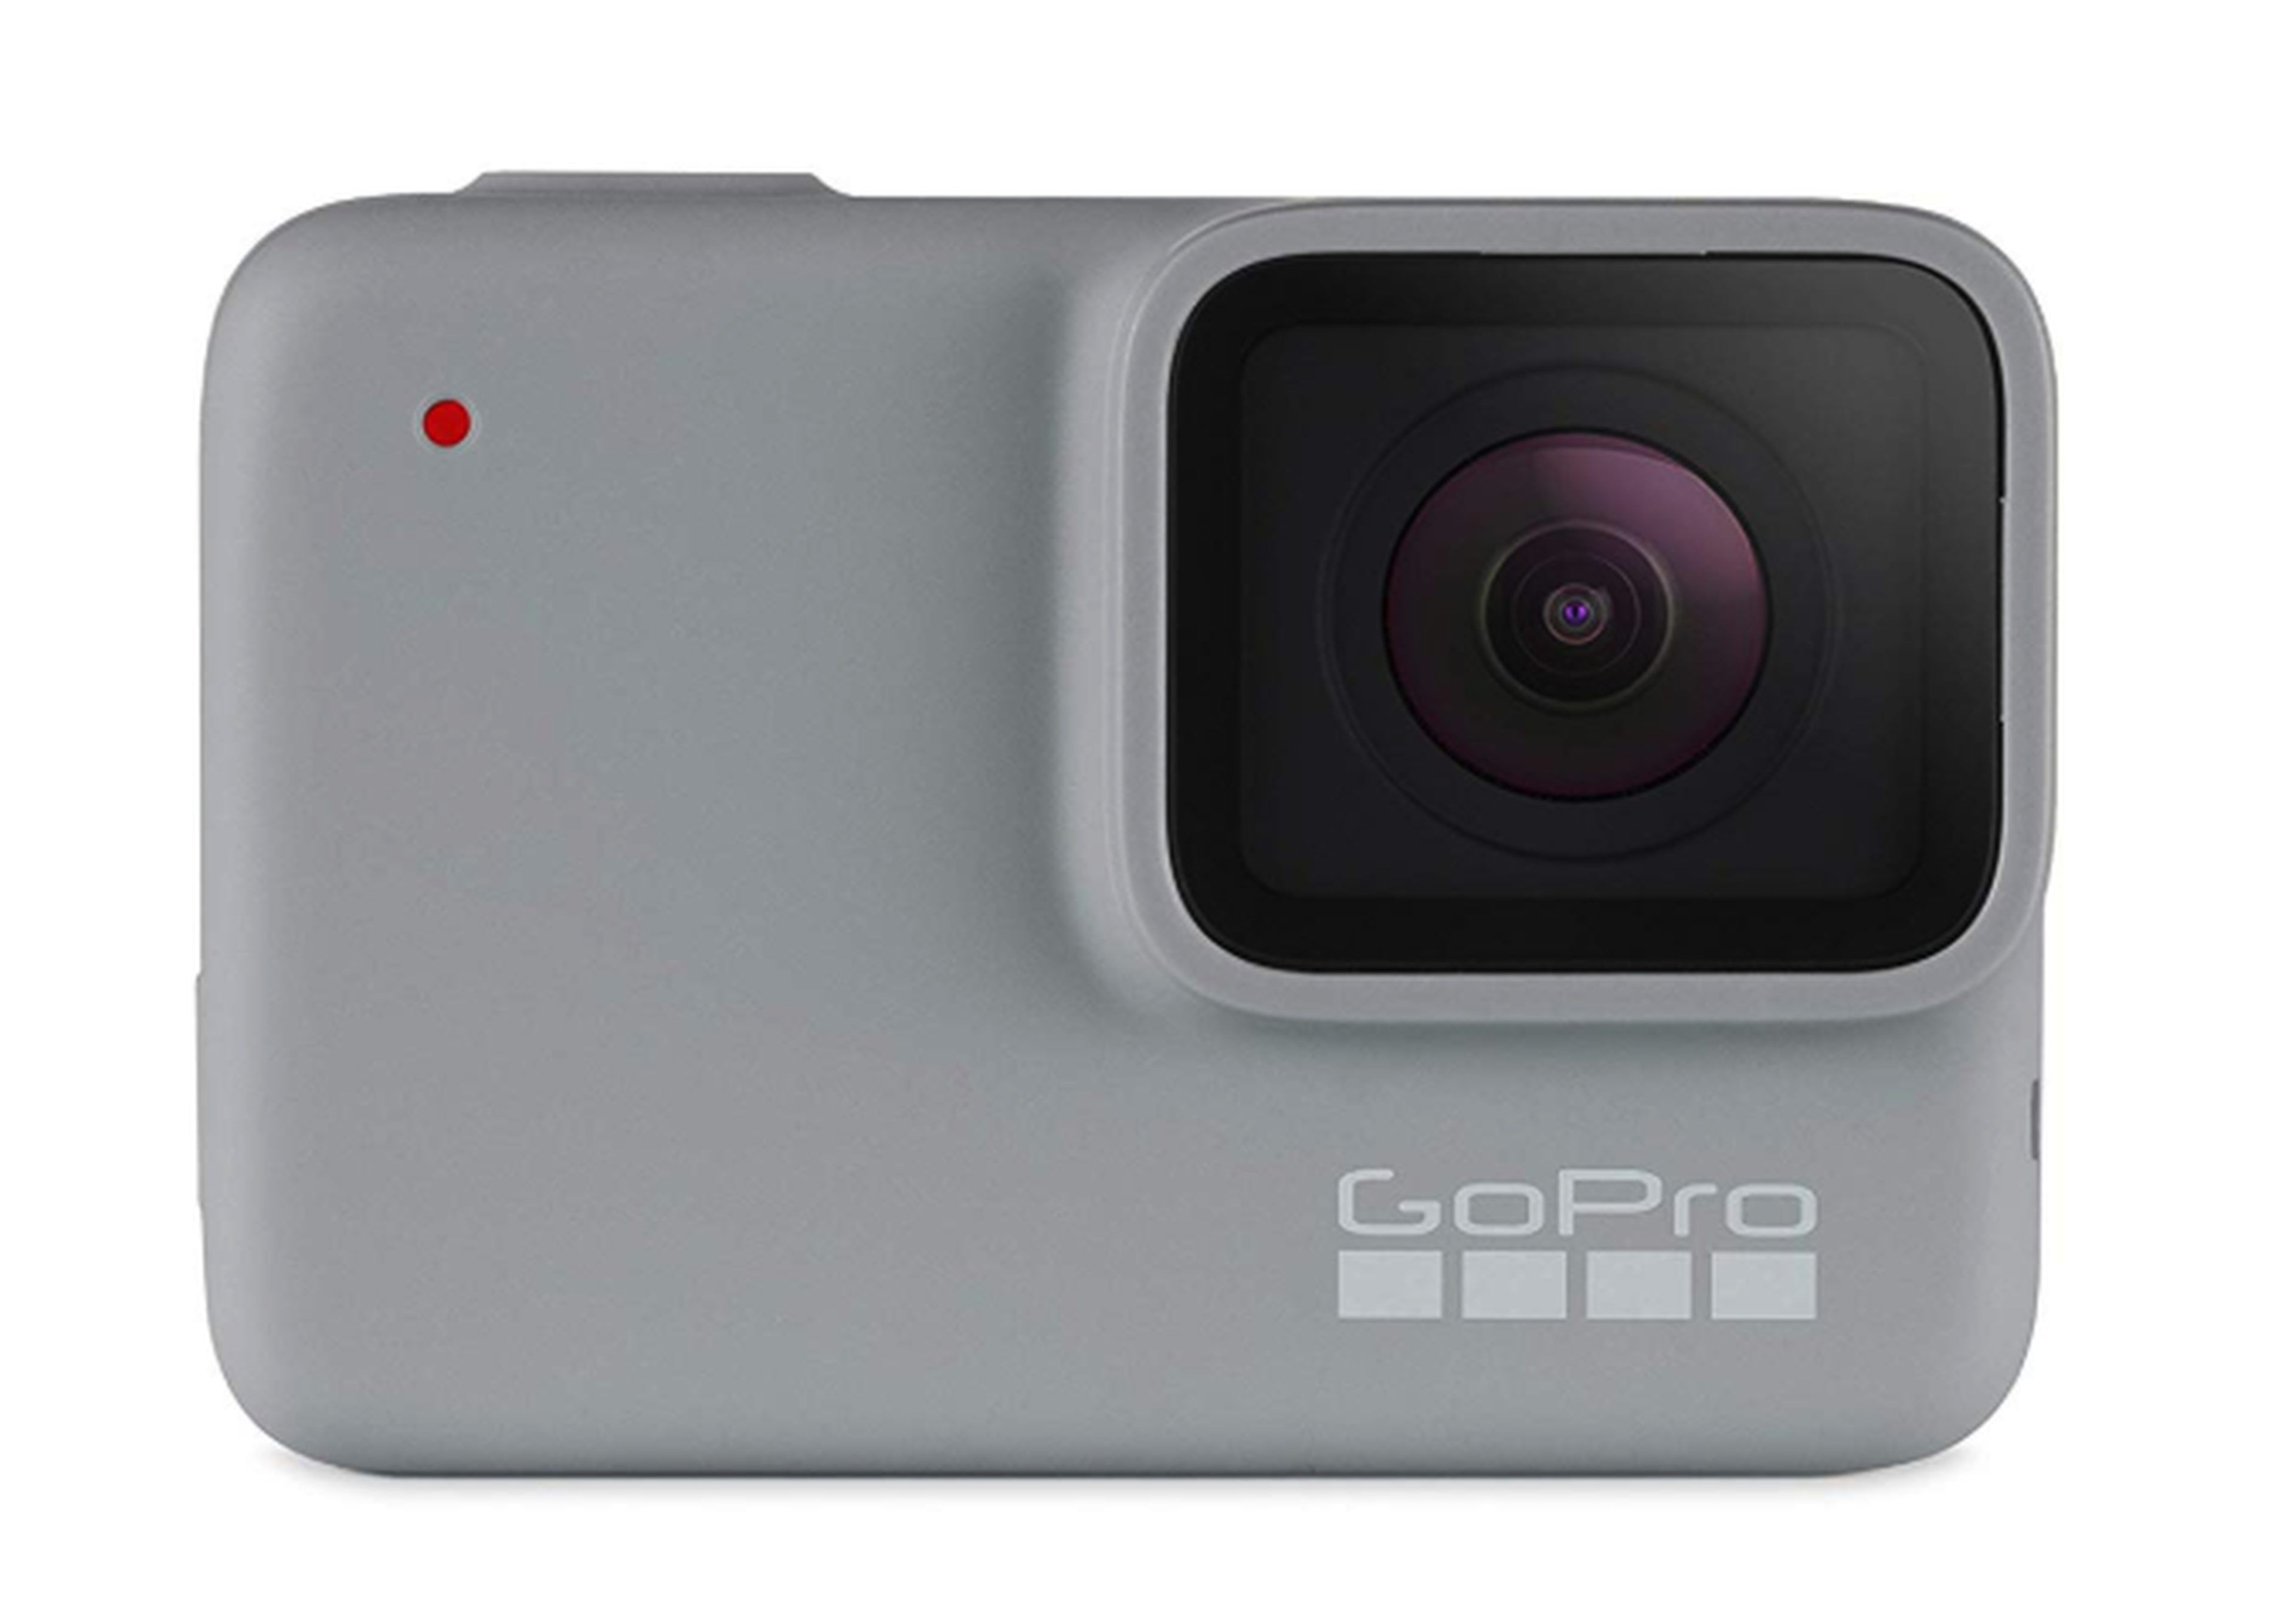 Yogur pared elección Este año me quiero comprar una GoPro barata, ¿cuáles son las mejores  opciones? | Computer Hoy